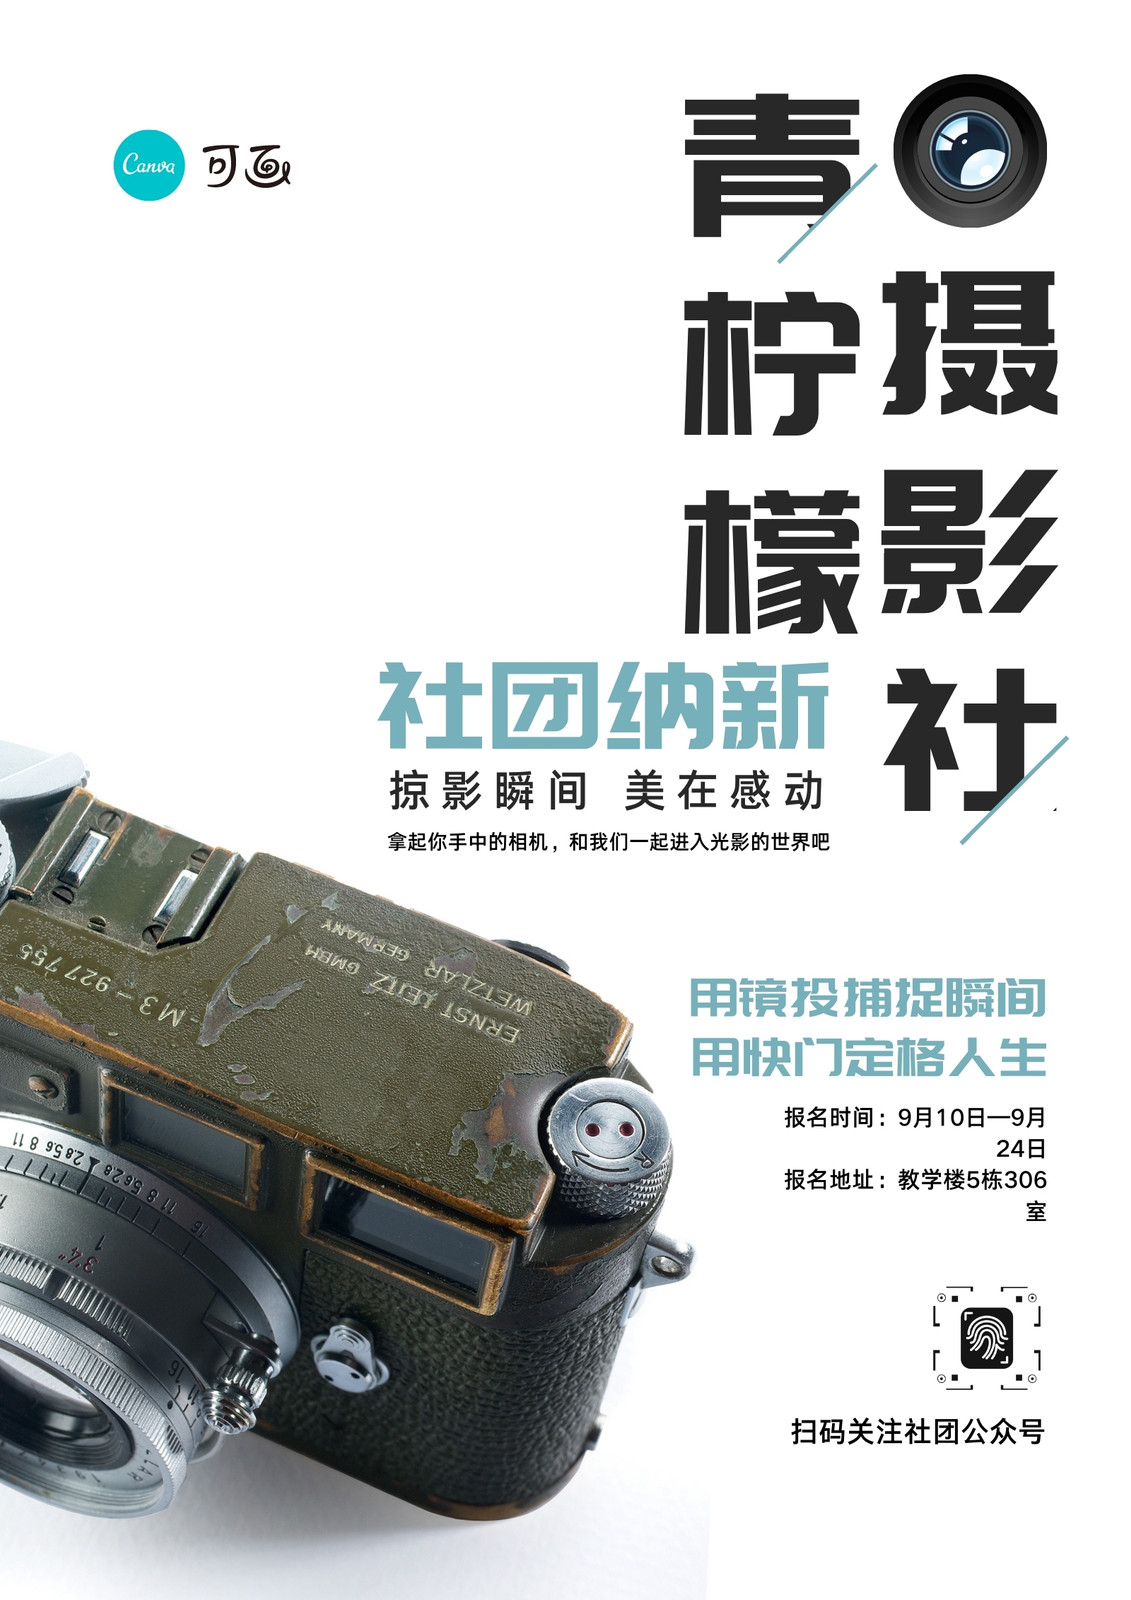 白绿色摄影社徕卡相机照片校园中文海报